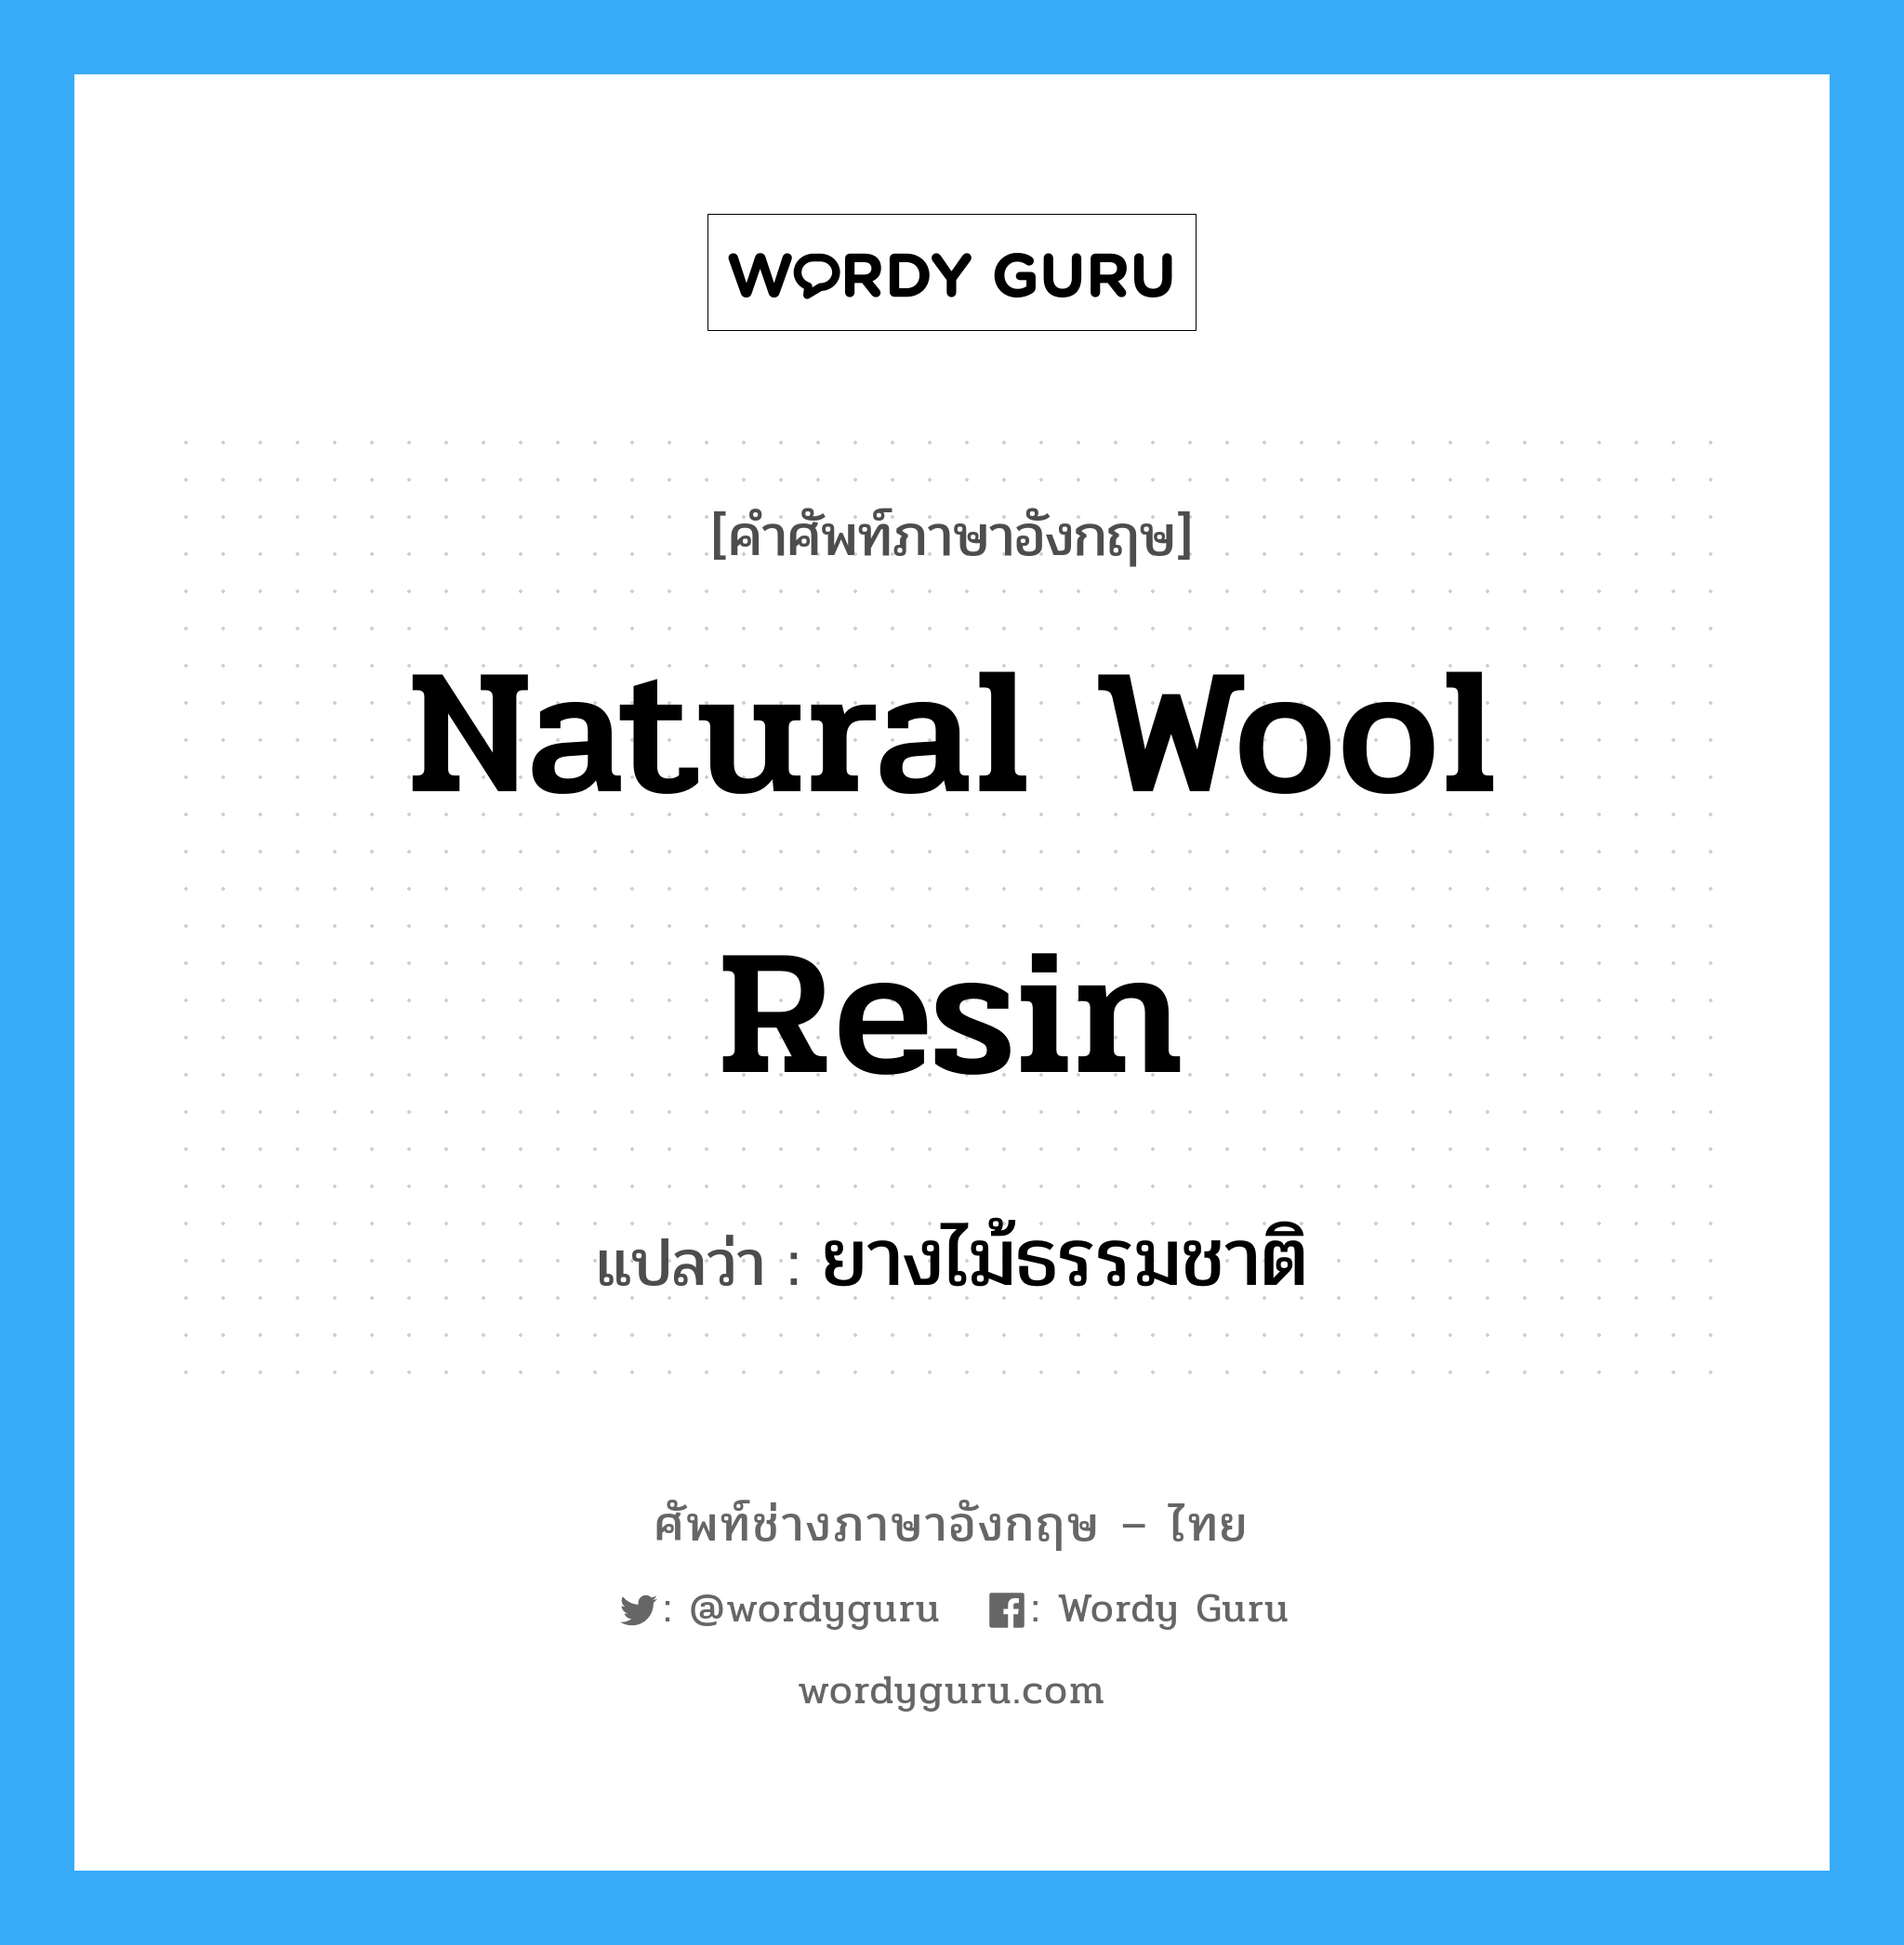 ยางไม้ธรรมชาติ ภาษาอังกฤษ?, คำศัพท์ช่างภาษาอังกฤษ - ไทย ยางไม้ธรรมชาติ คำศัพท์ภาษาอังกฤษ ยางไม้ธรรมชาติ แปลว่า natural wool resin